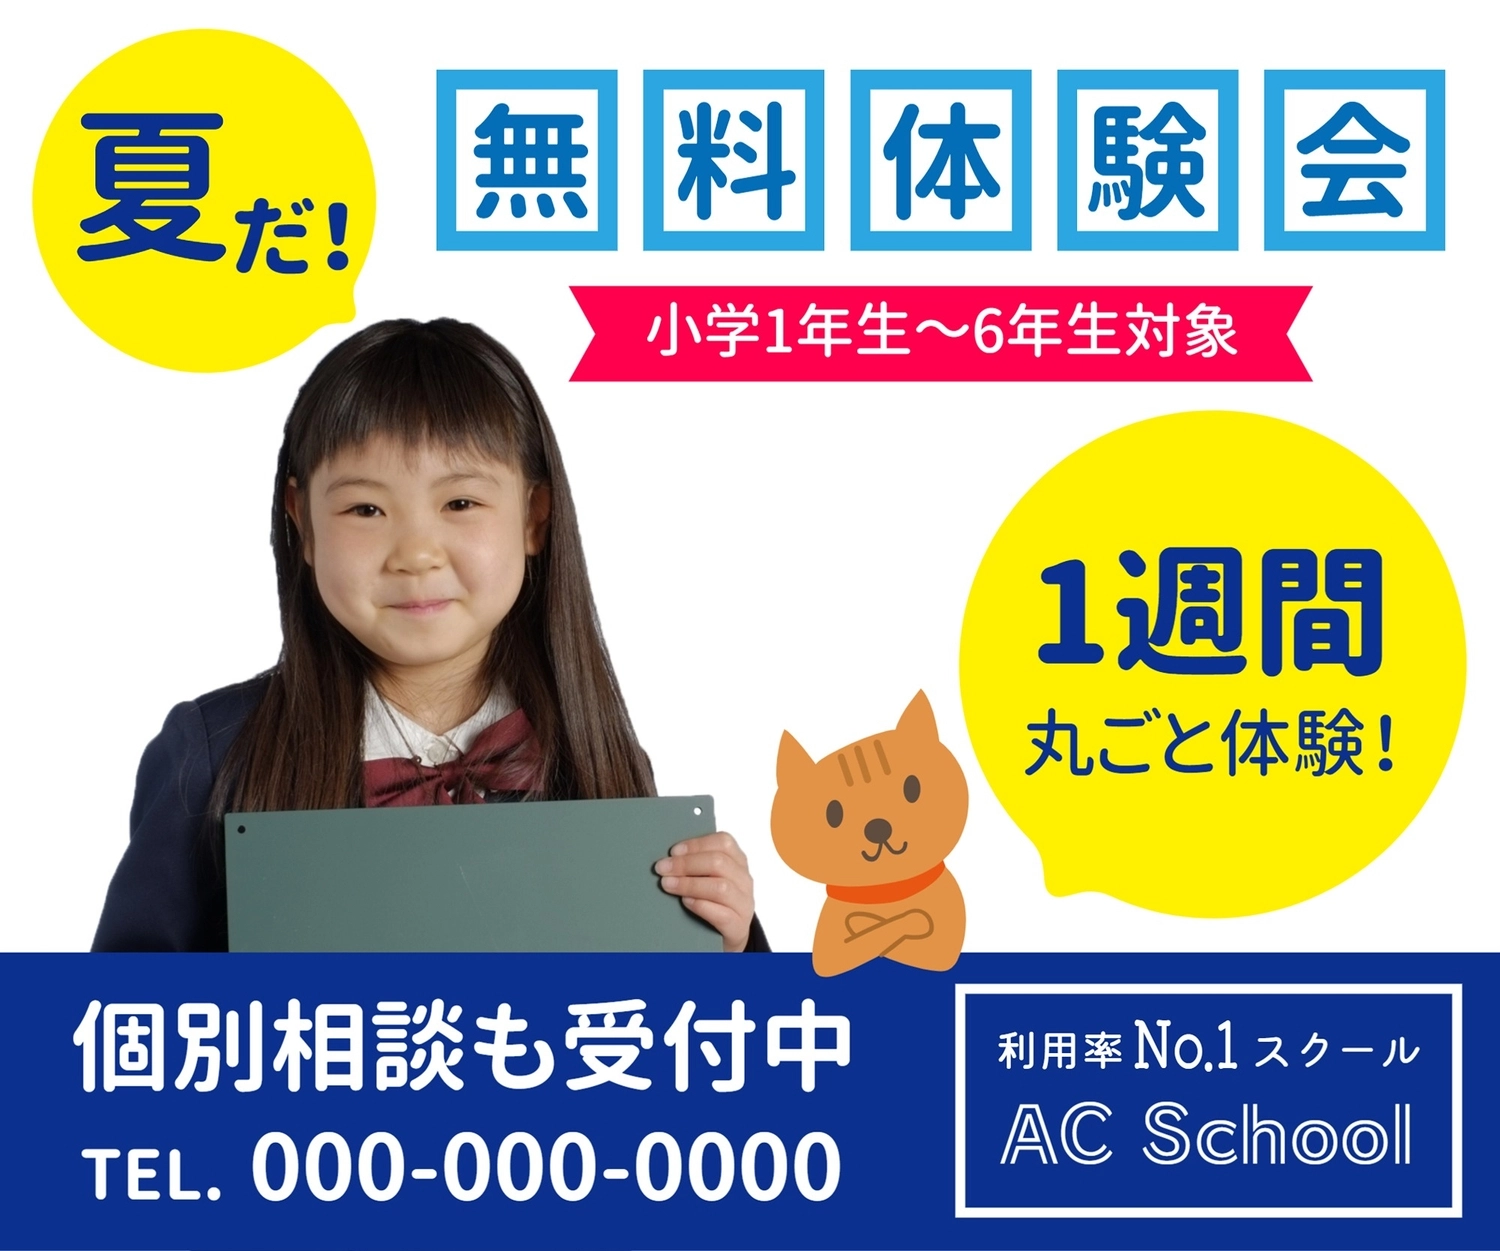 小学生対象・夏の塾体験会, Tư vấn cá nhân, con mèo, màu vàng, banner mẫu